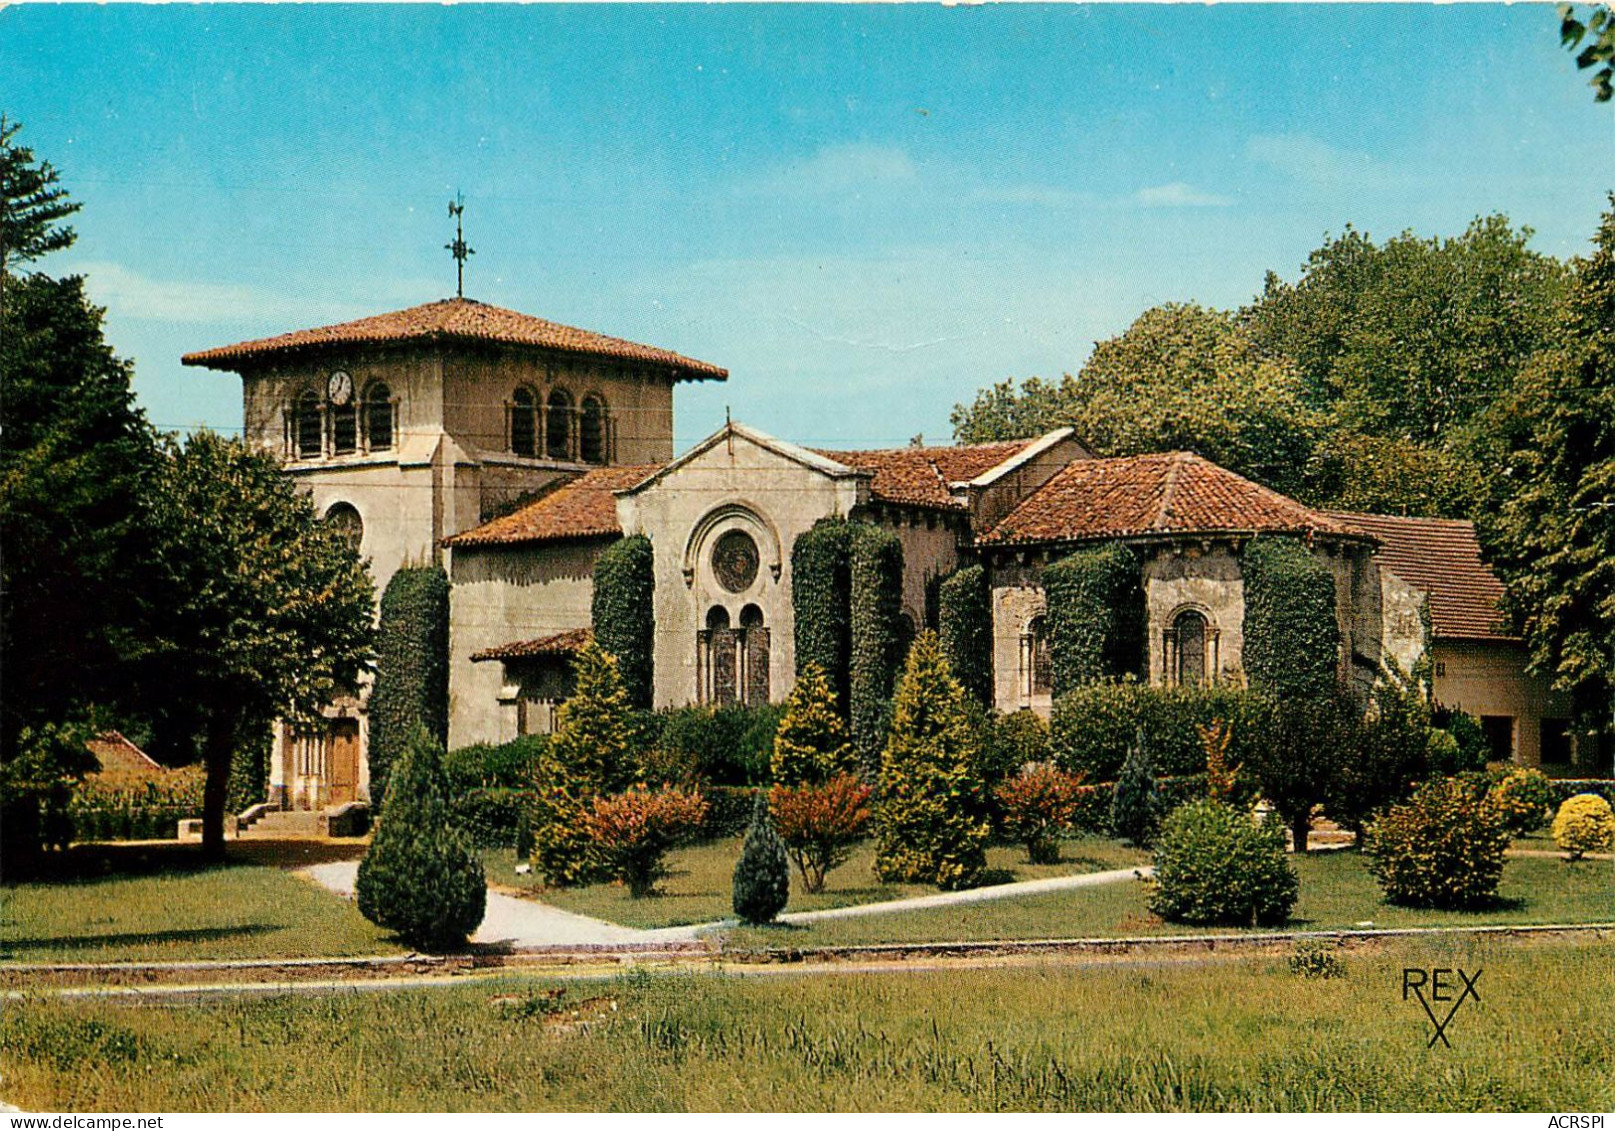 TOSSE Eglise Romane A 4km De SAINT VINCENT DE TYROSSE  (scan Recto-verso) QQ 1108 - Saint Vincent De Tyrosse